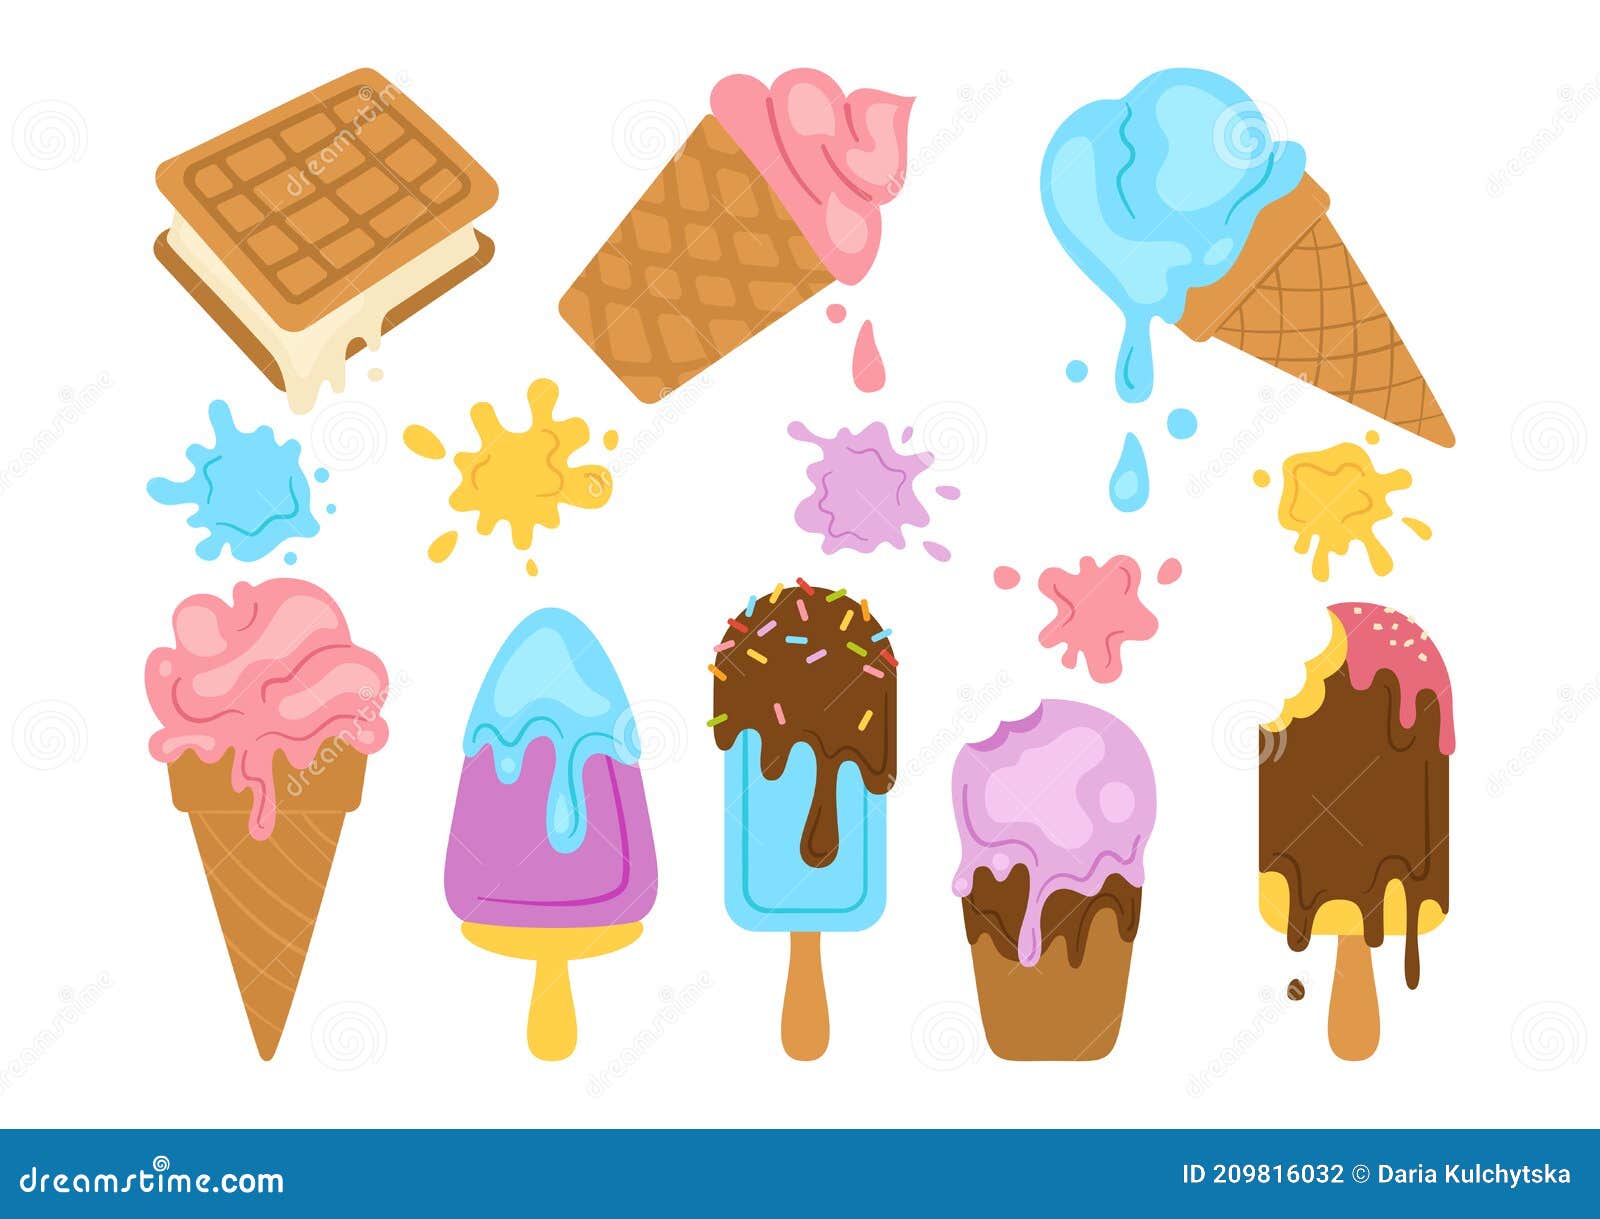 sorvete de chocolate, estilo de desenho animado kawaii, estampa